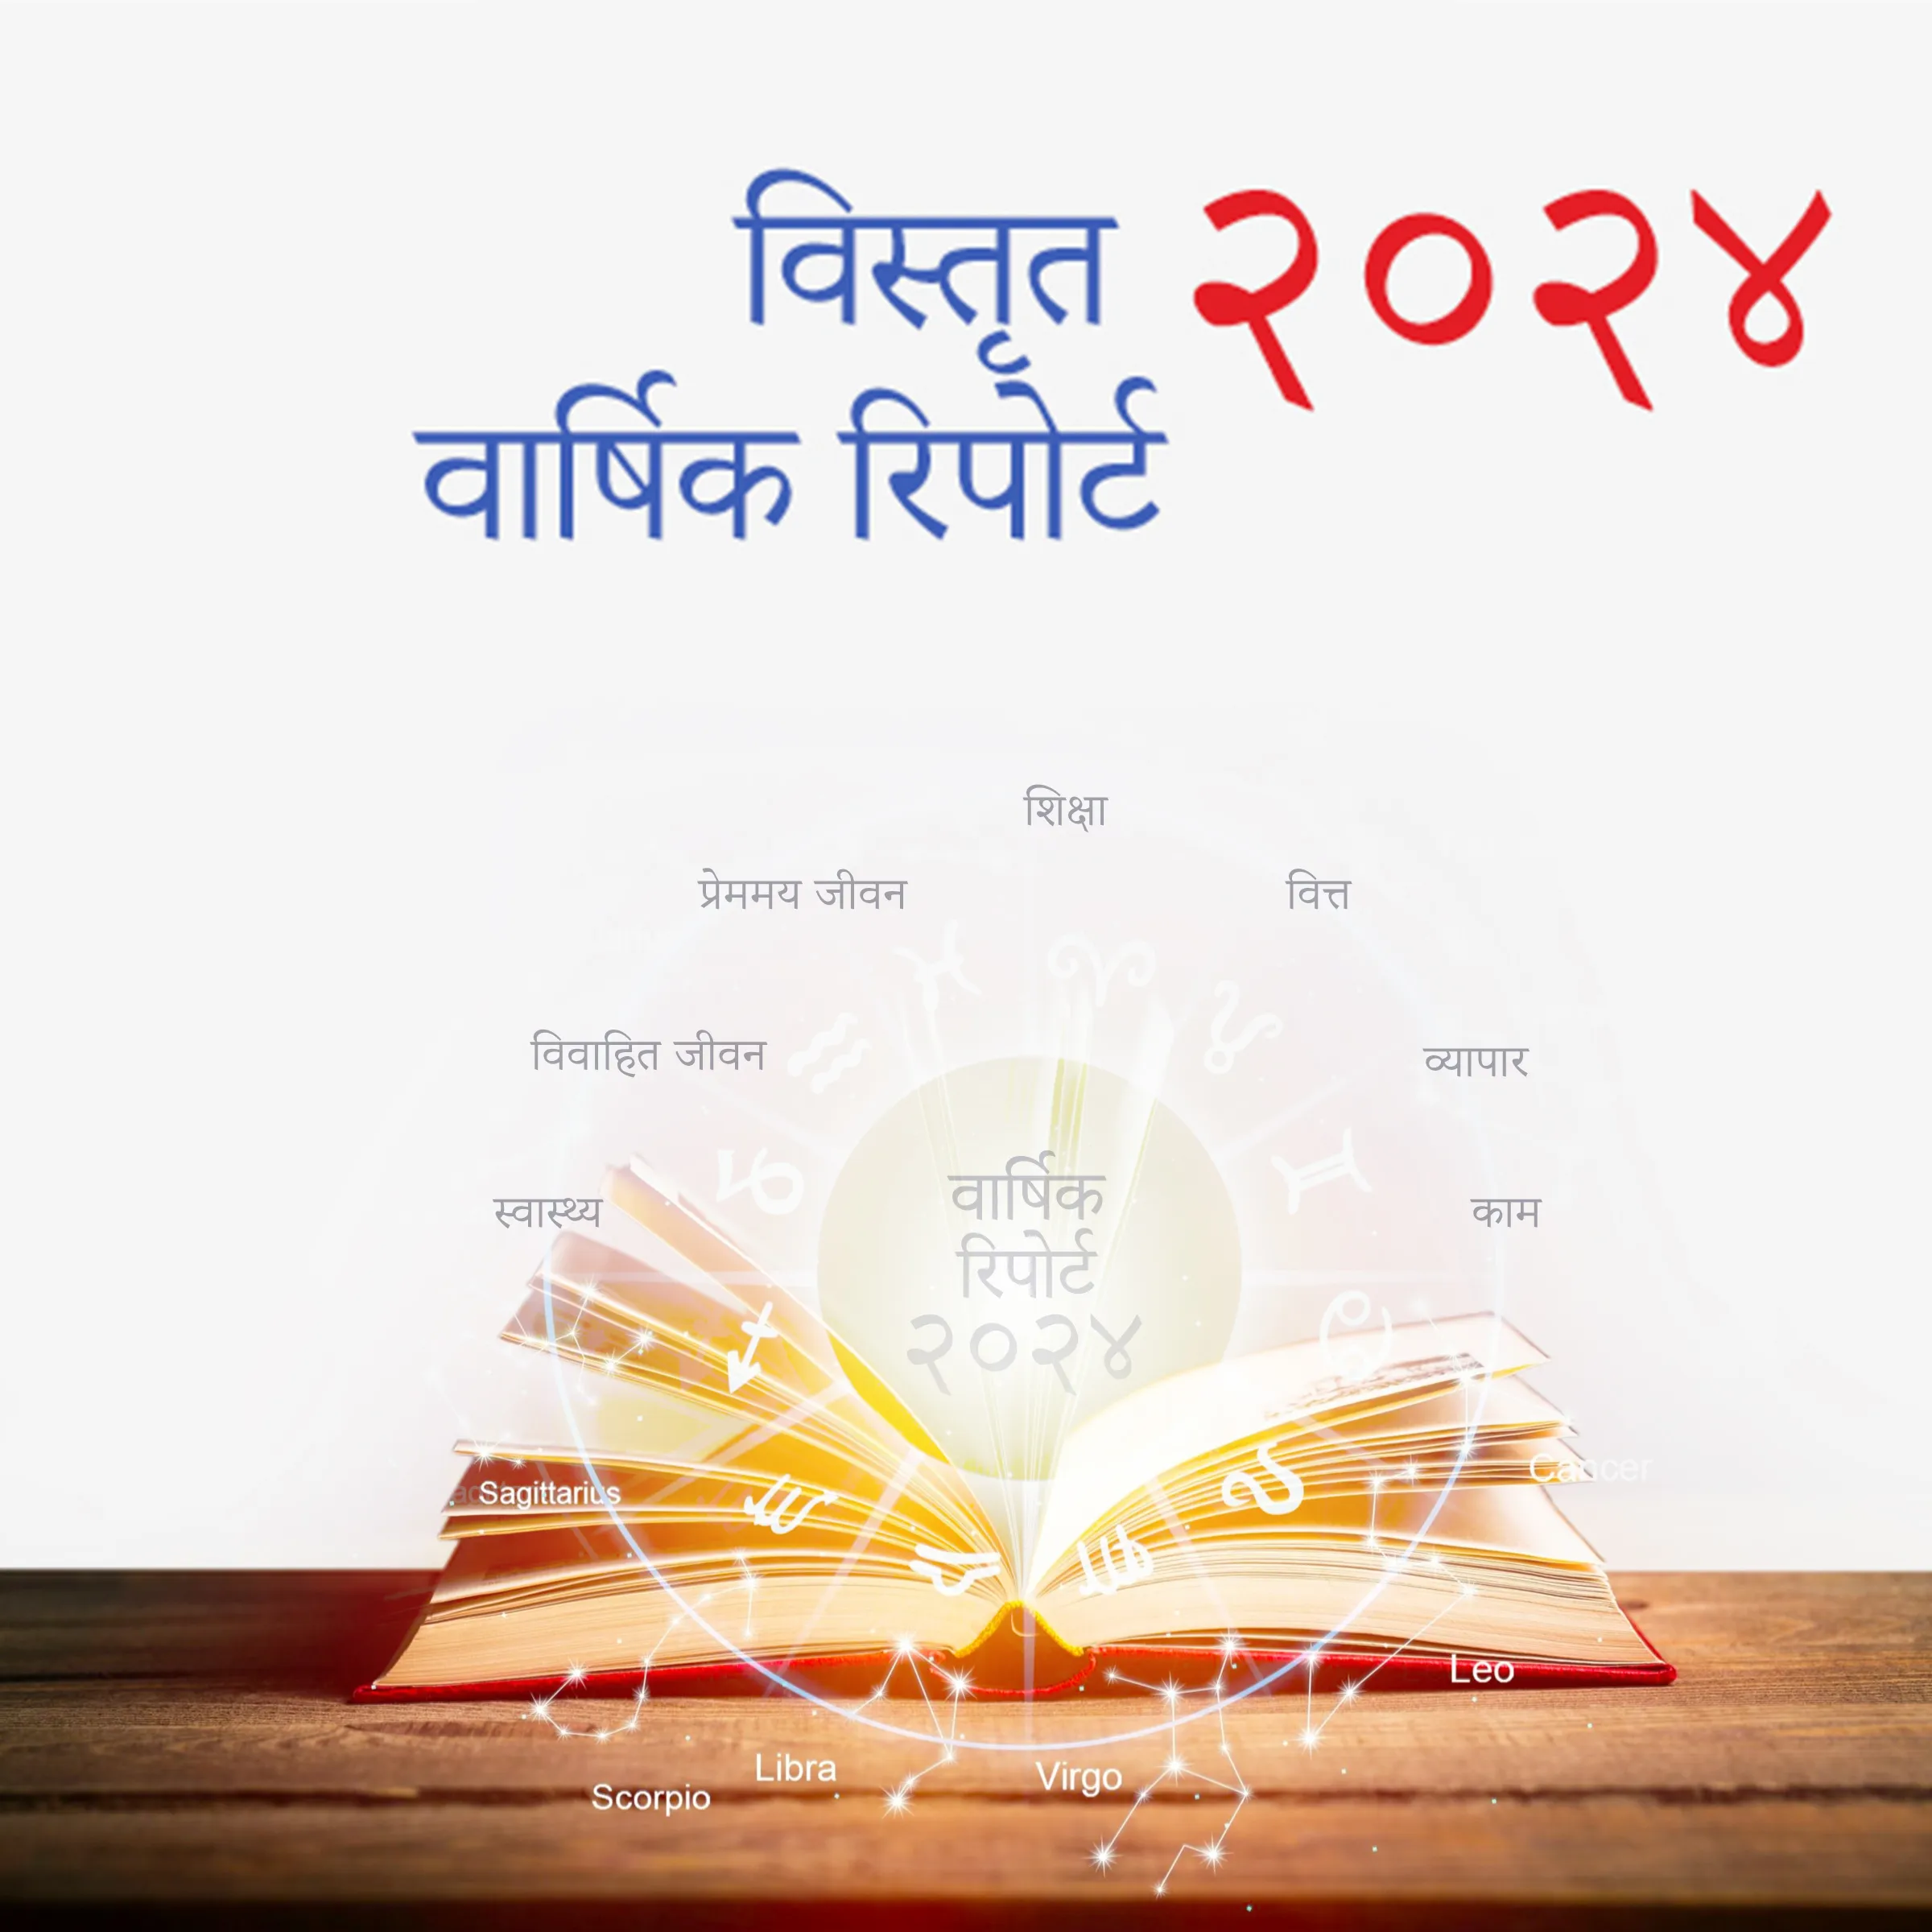 २०२४ विस्तृत वार्षिक रिपोर्ट – Acharya Bharadwaj